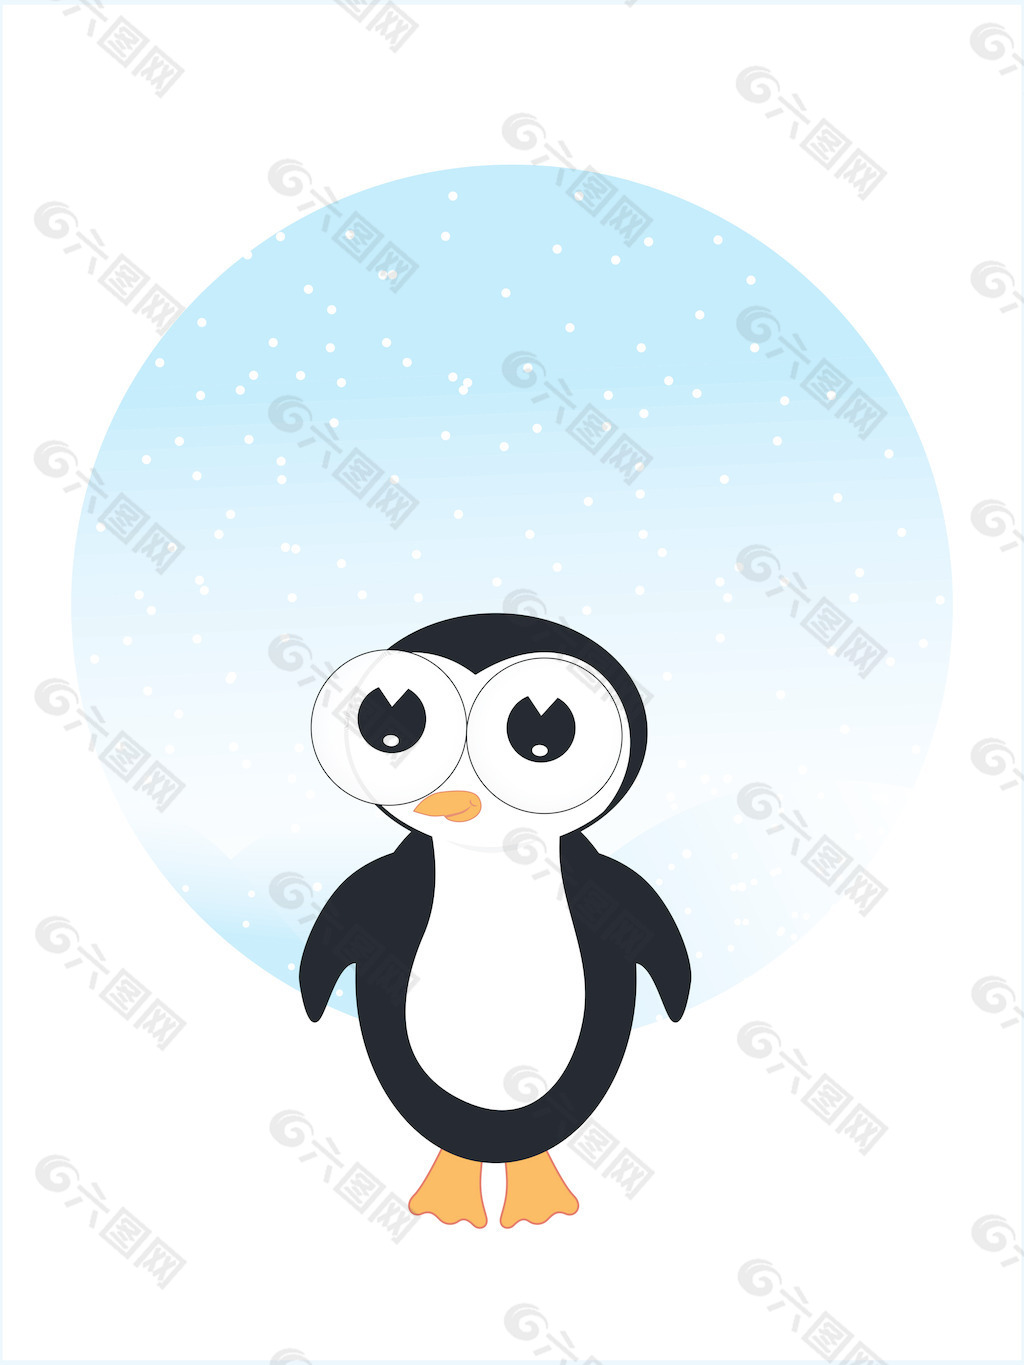 插图的小企鹅